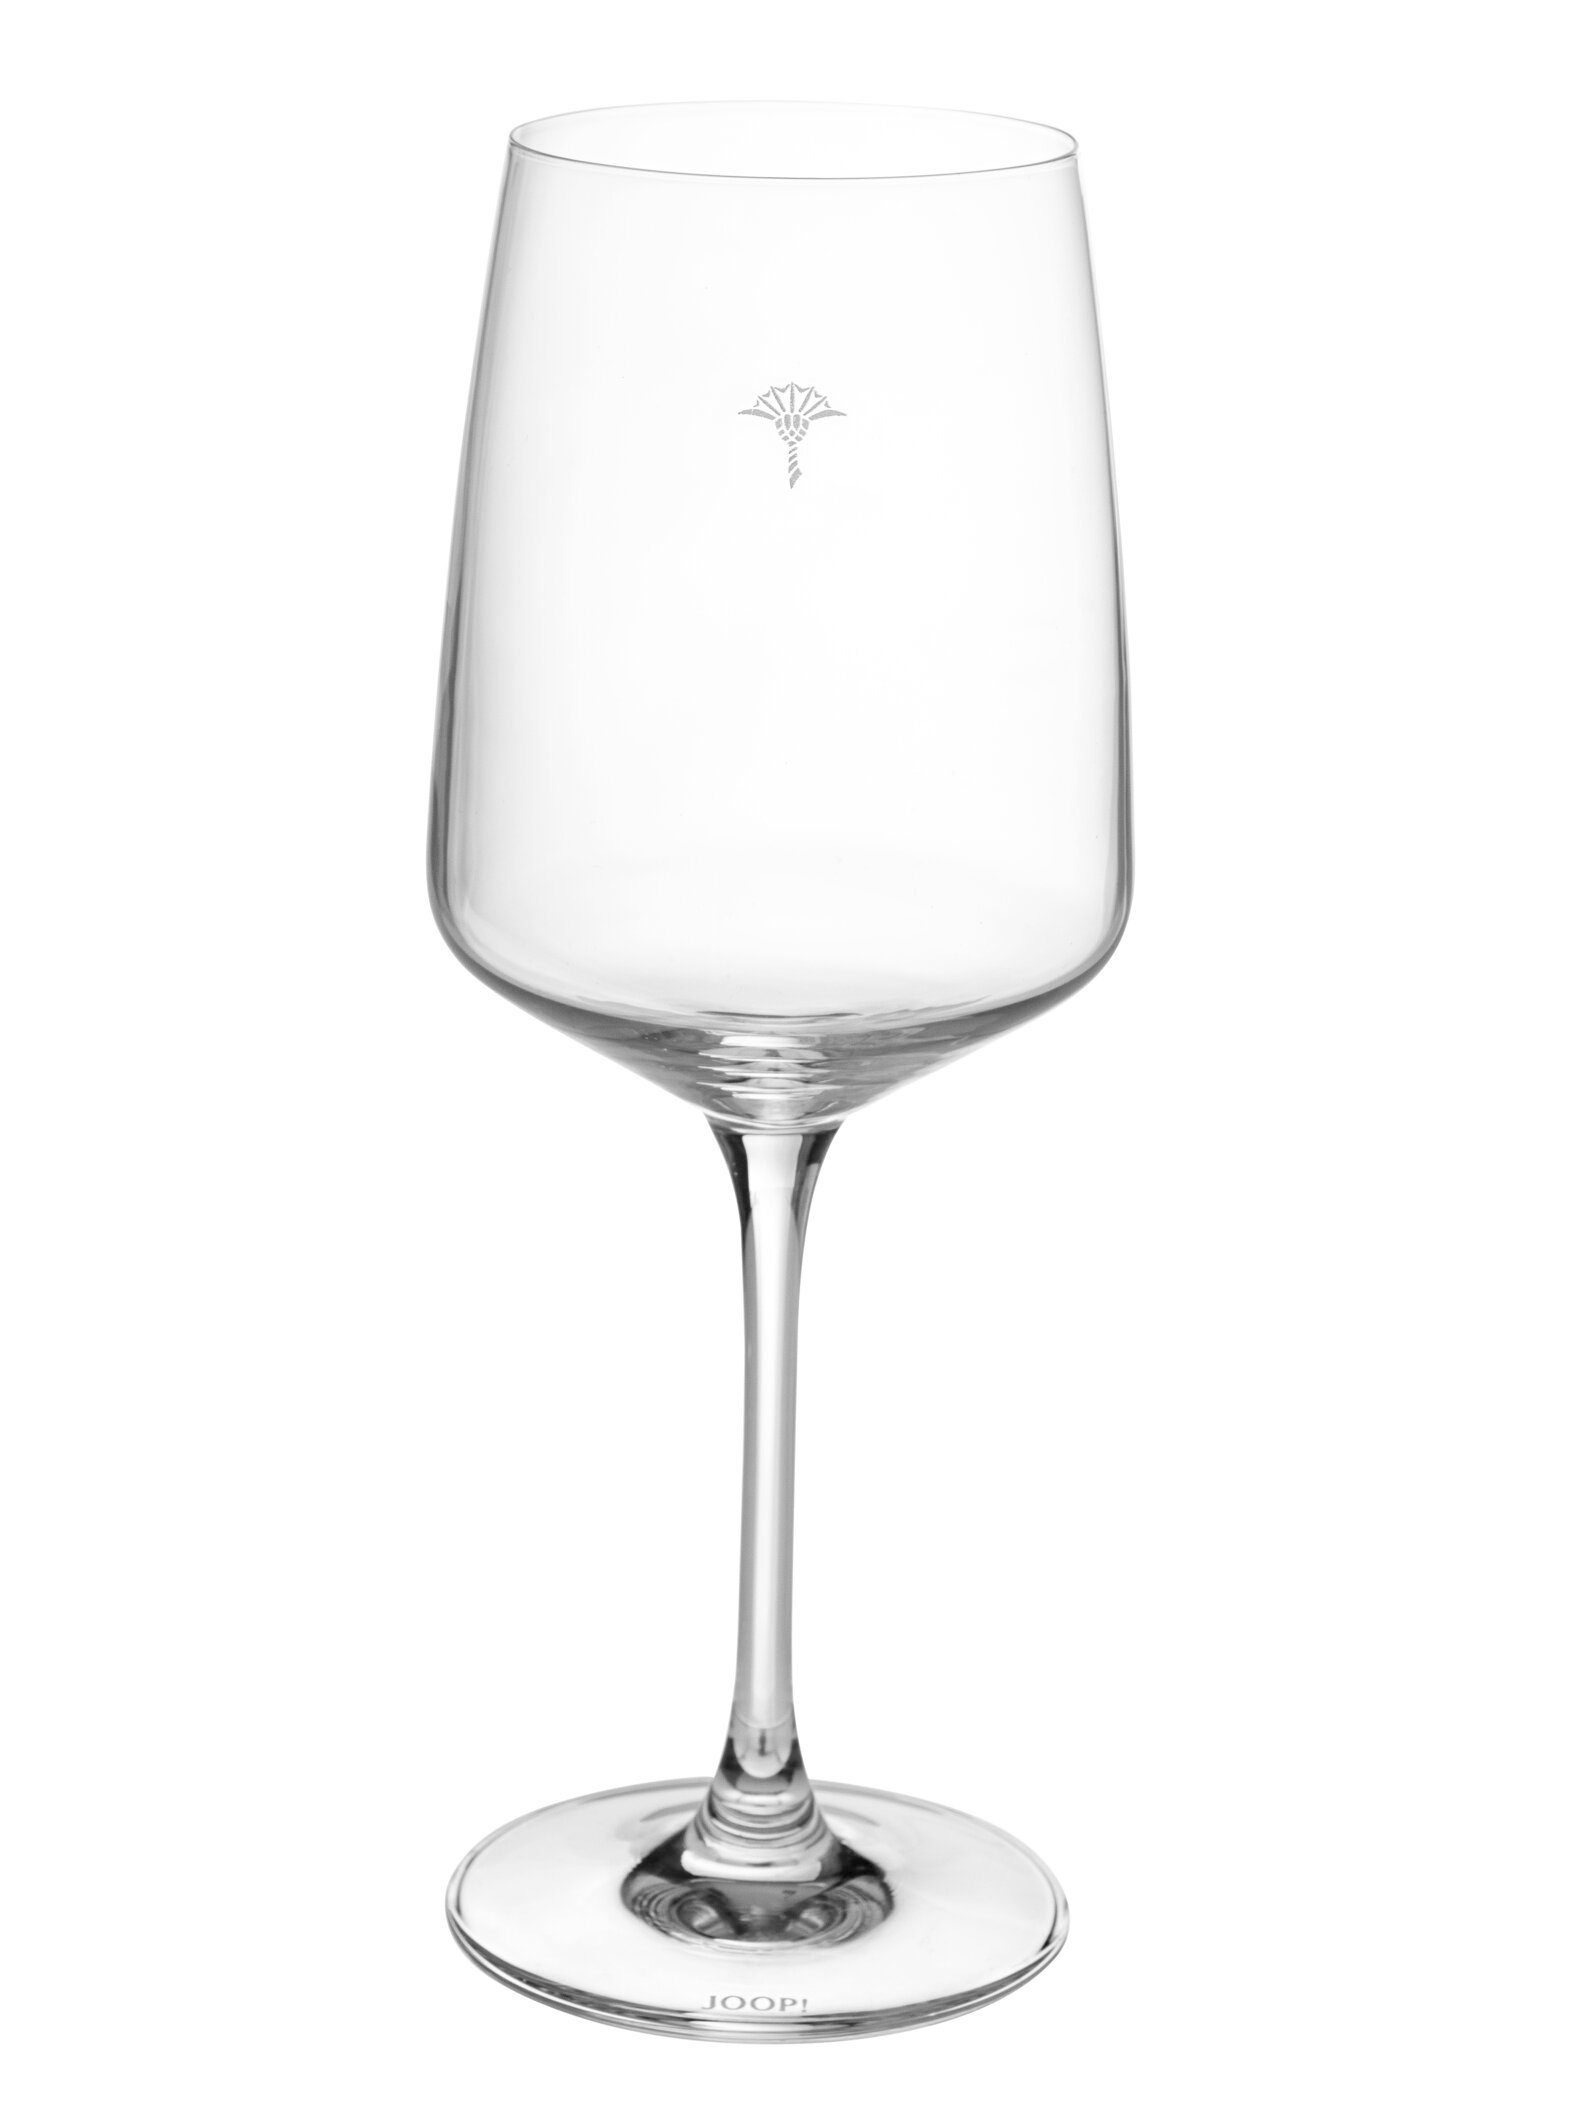 Joop! Weinglas JOOP! LIVING - SINGLE CORNFLOWER Weißweinglas 2er Set, Glas,  Aus hochwertigem Kristallglas gefertigt